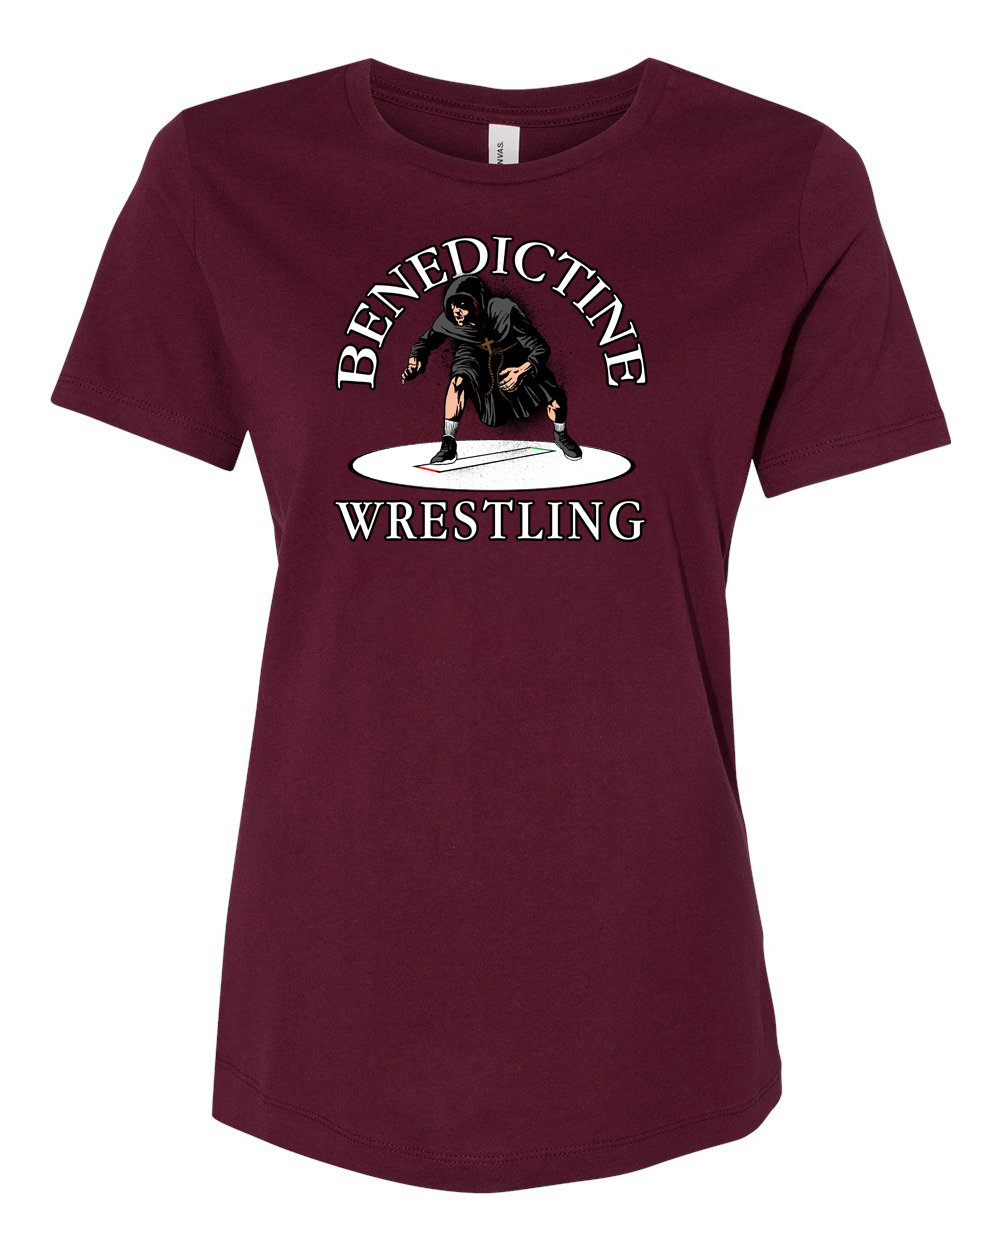 BC Wrestling “Wrestler” Womens T-Shirt